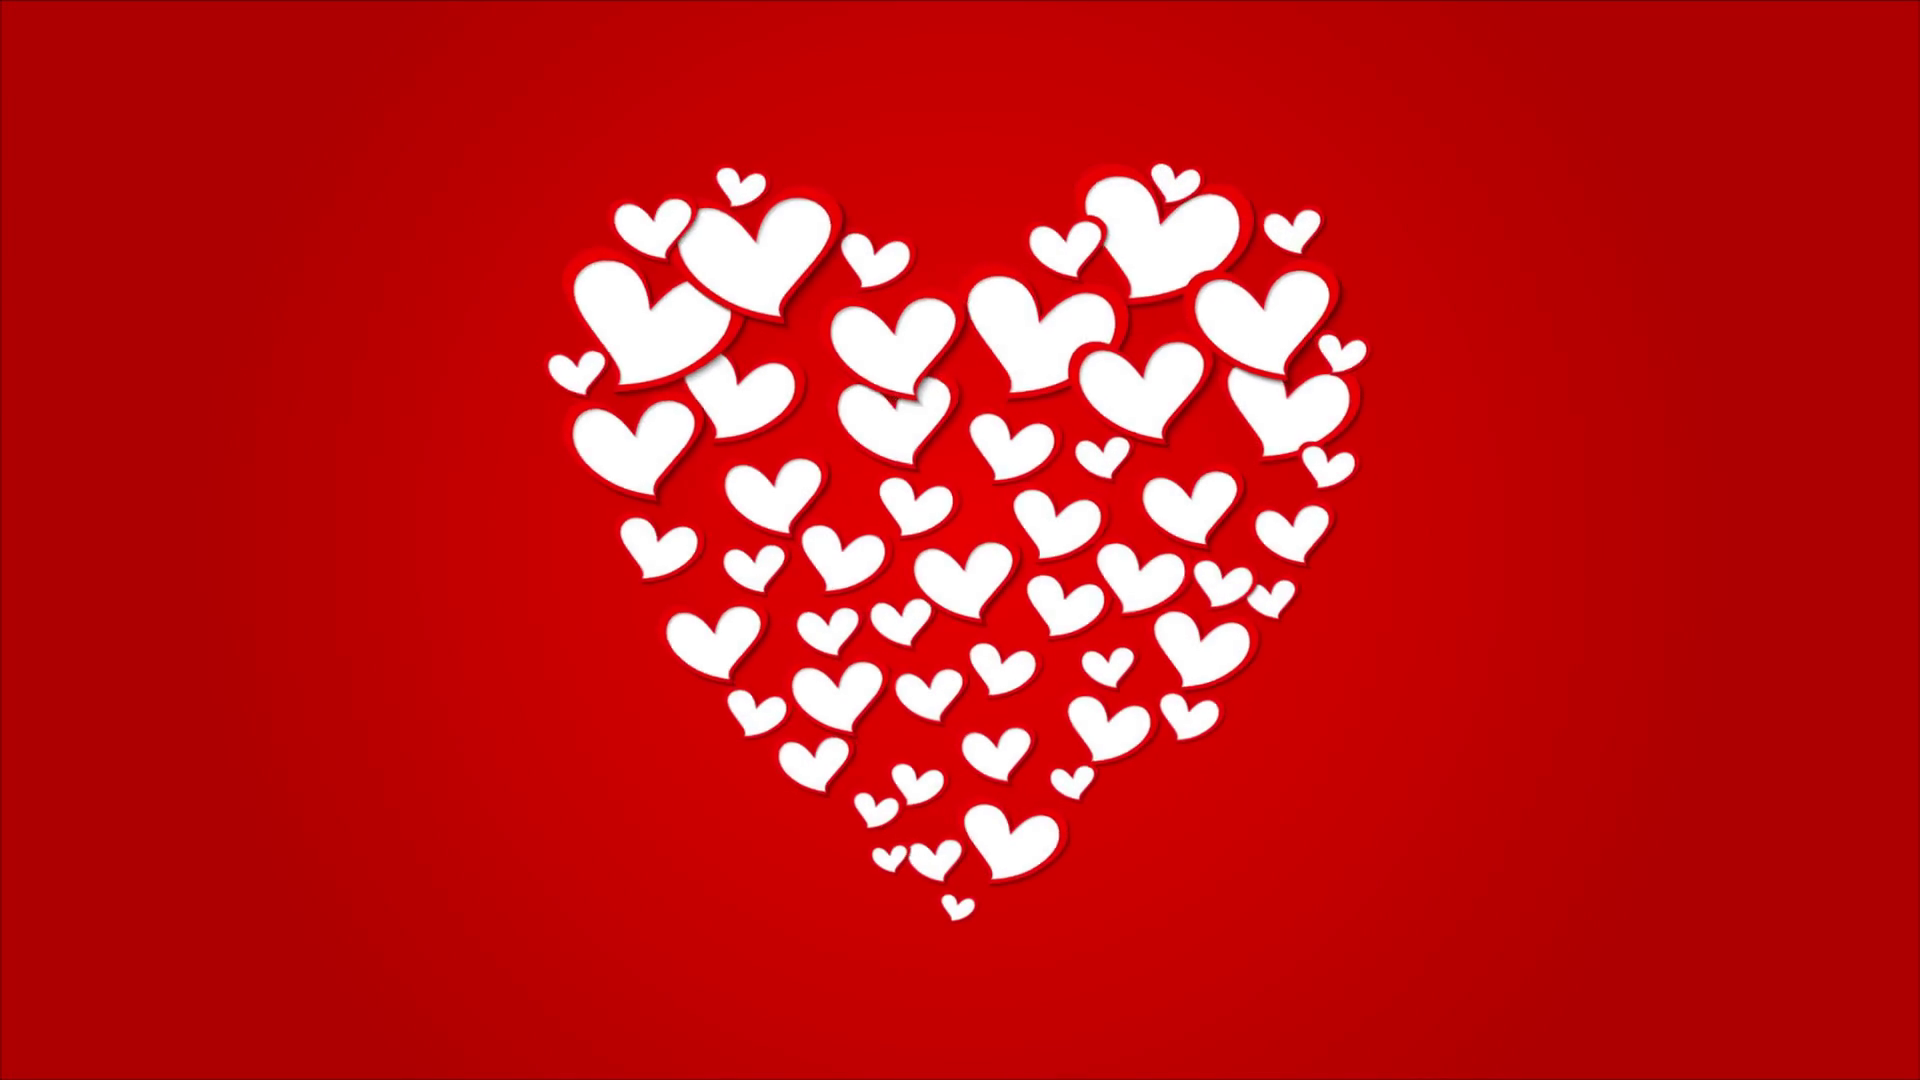 愛のアニメーションの壁紙,心臓,赤,バレンタイン・デー,愛,心臓